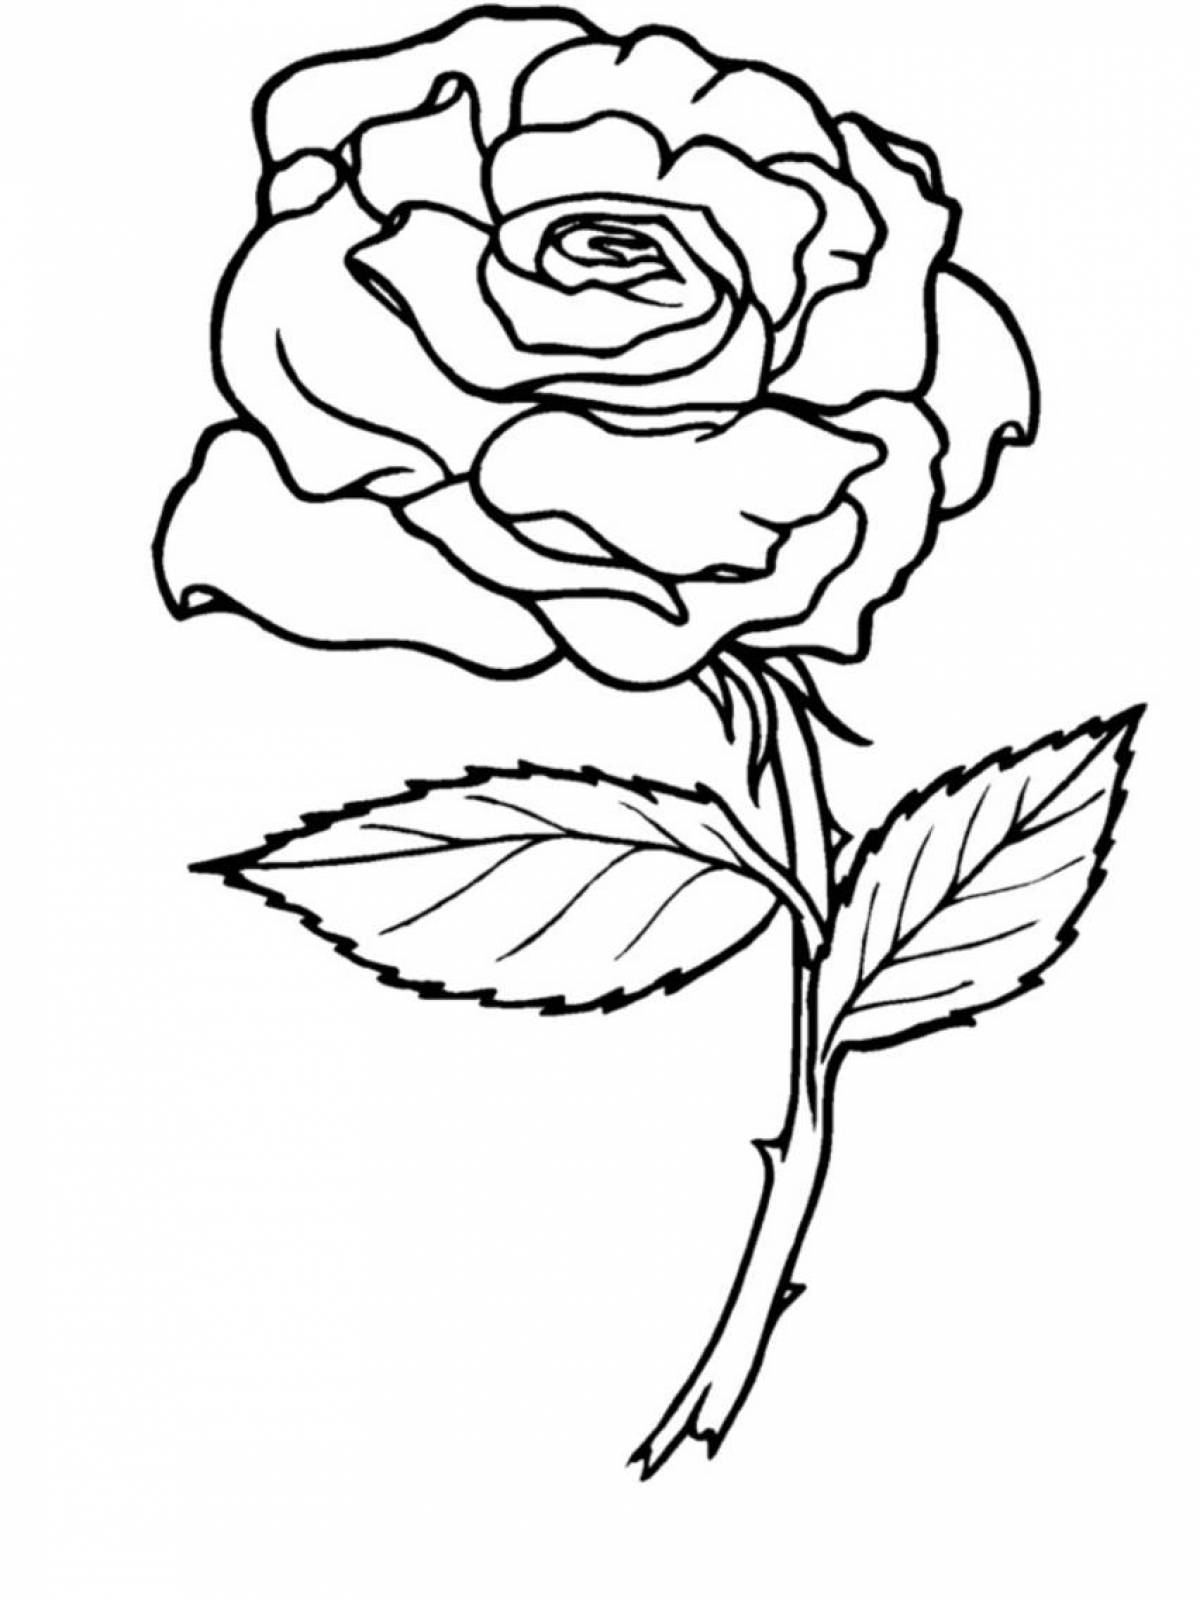 Violent rose coloring